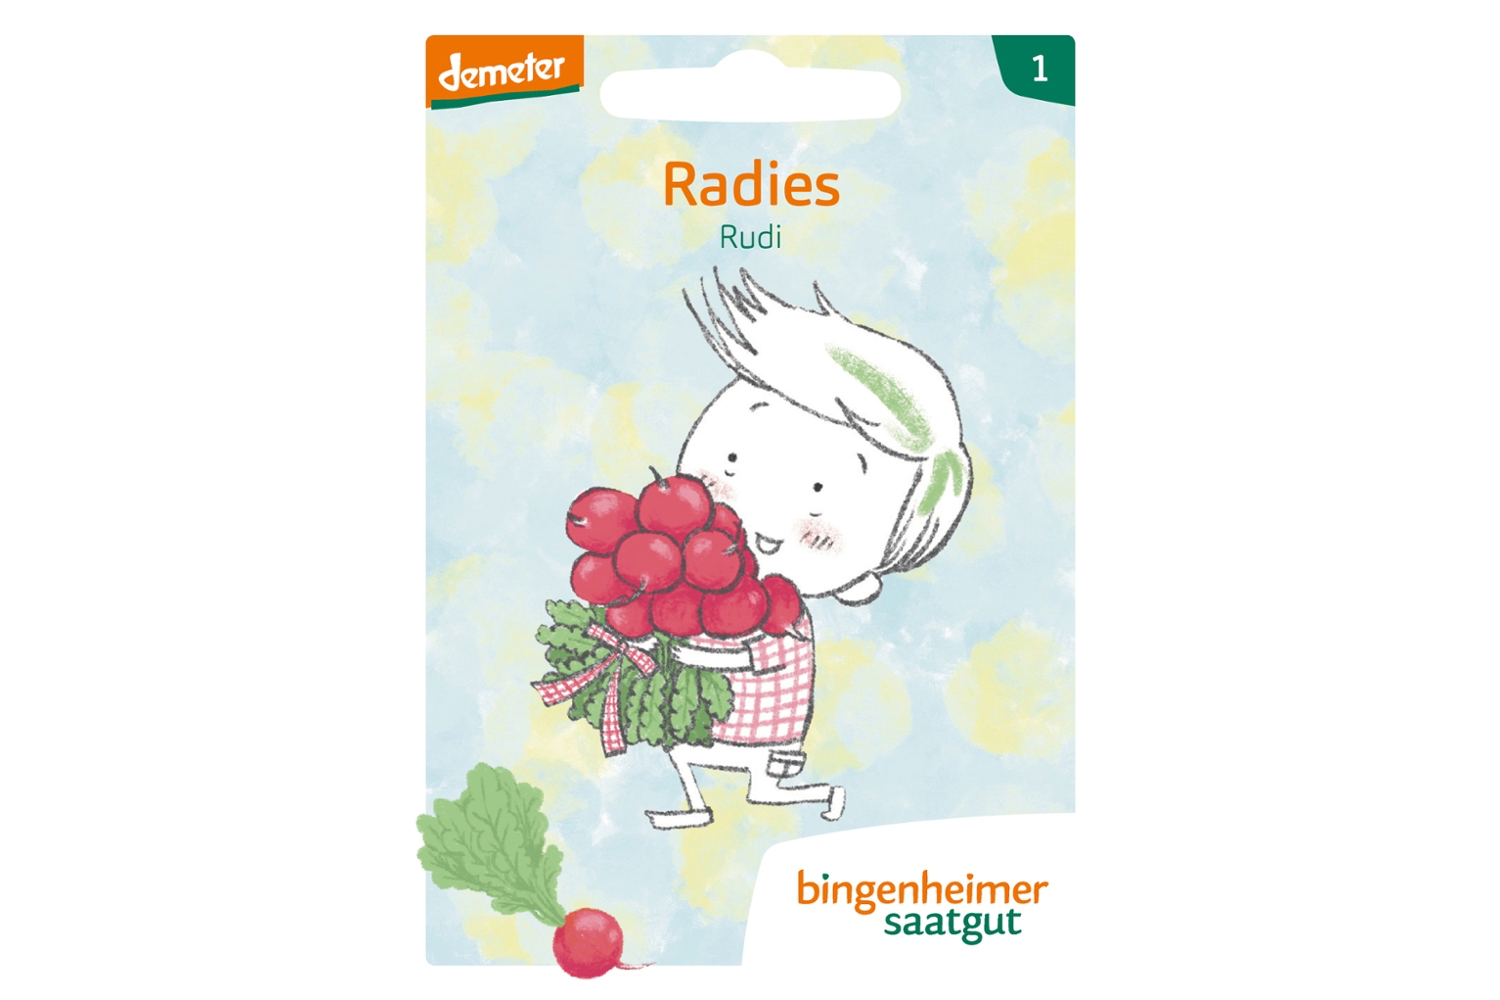 Bingenheimer Saatgut Gartenbande Rudi Radies